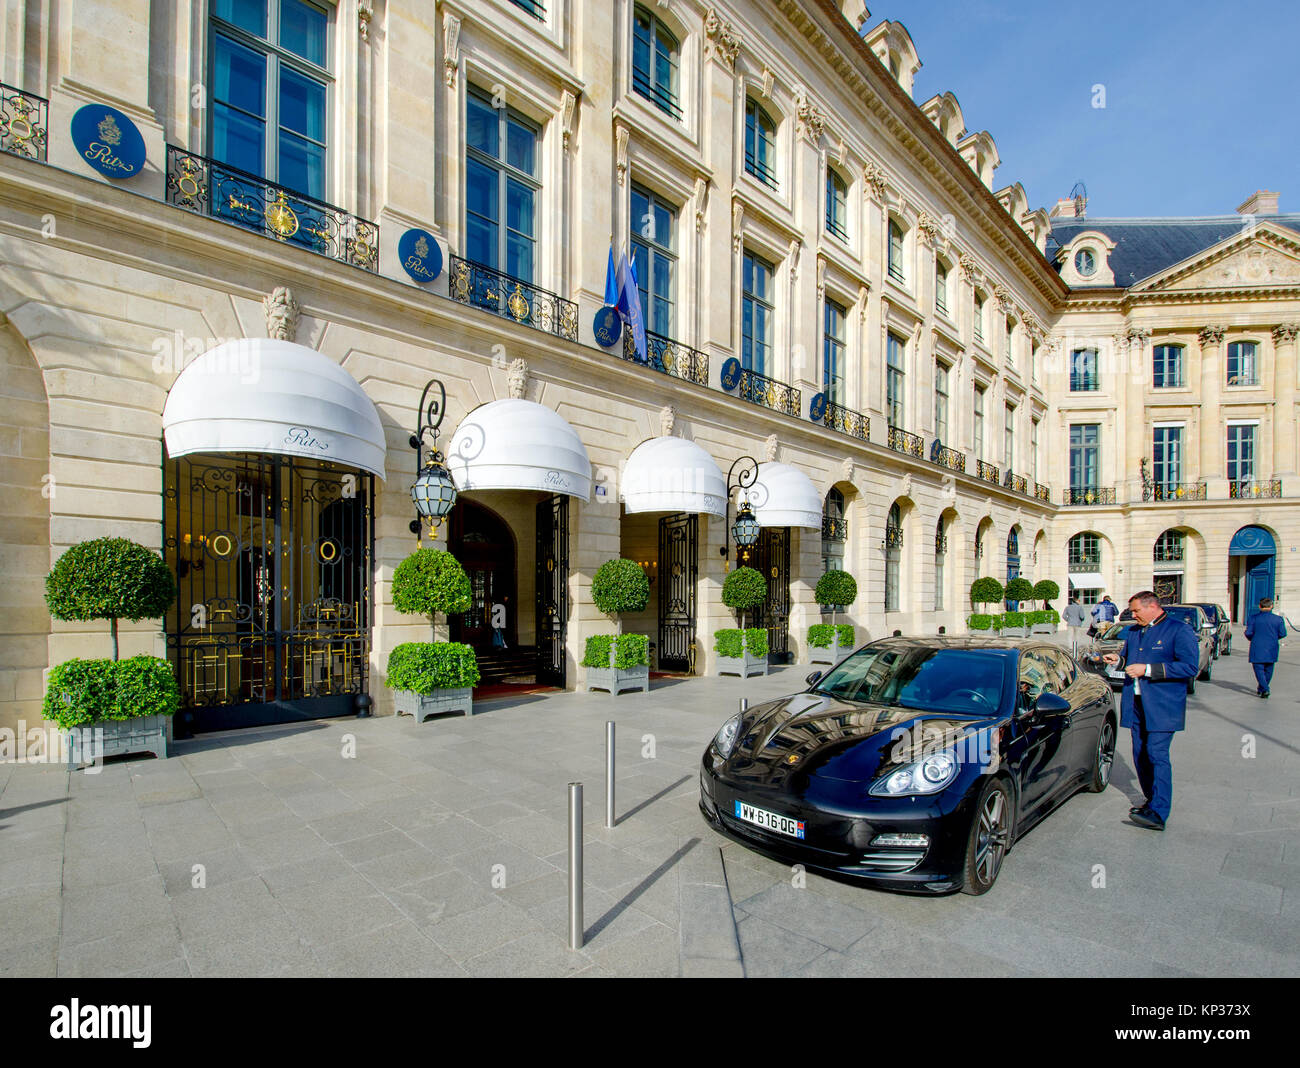 Hôtel ritz paris Banque de photographies et d'images à haute résolution -  Alamy